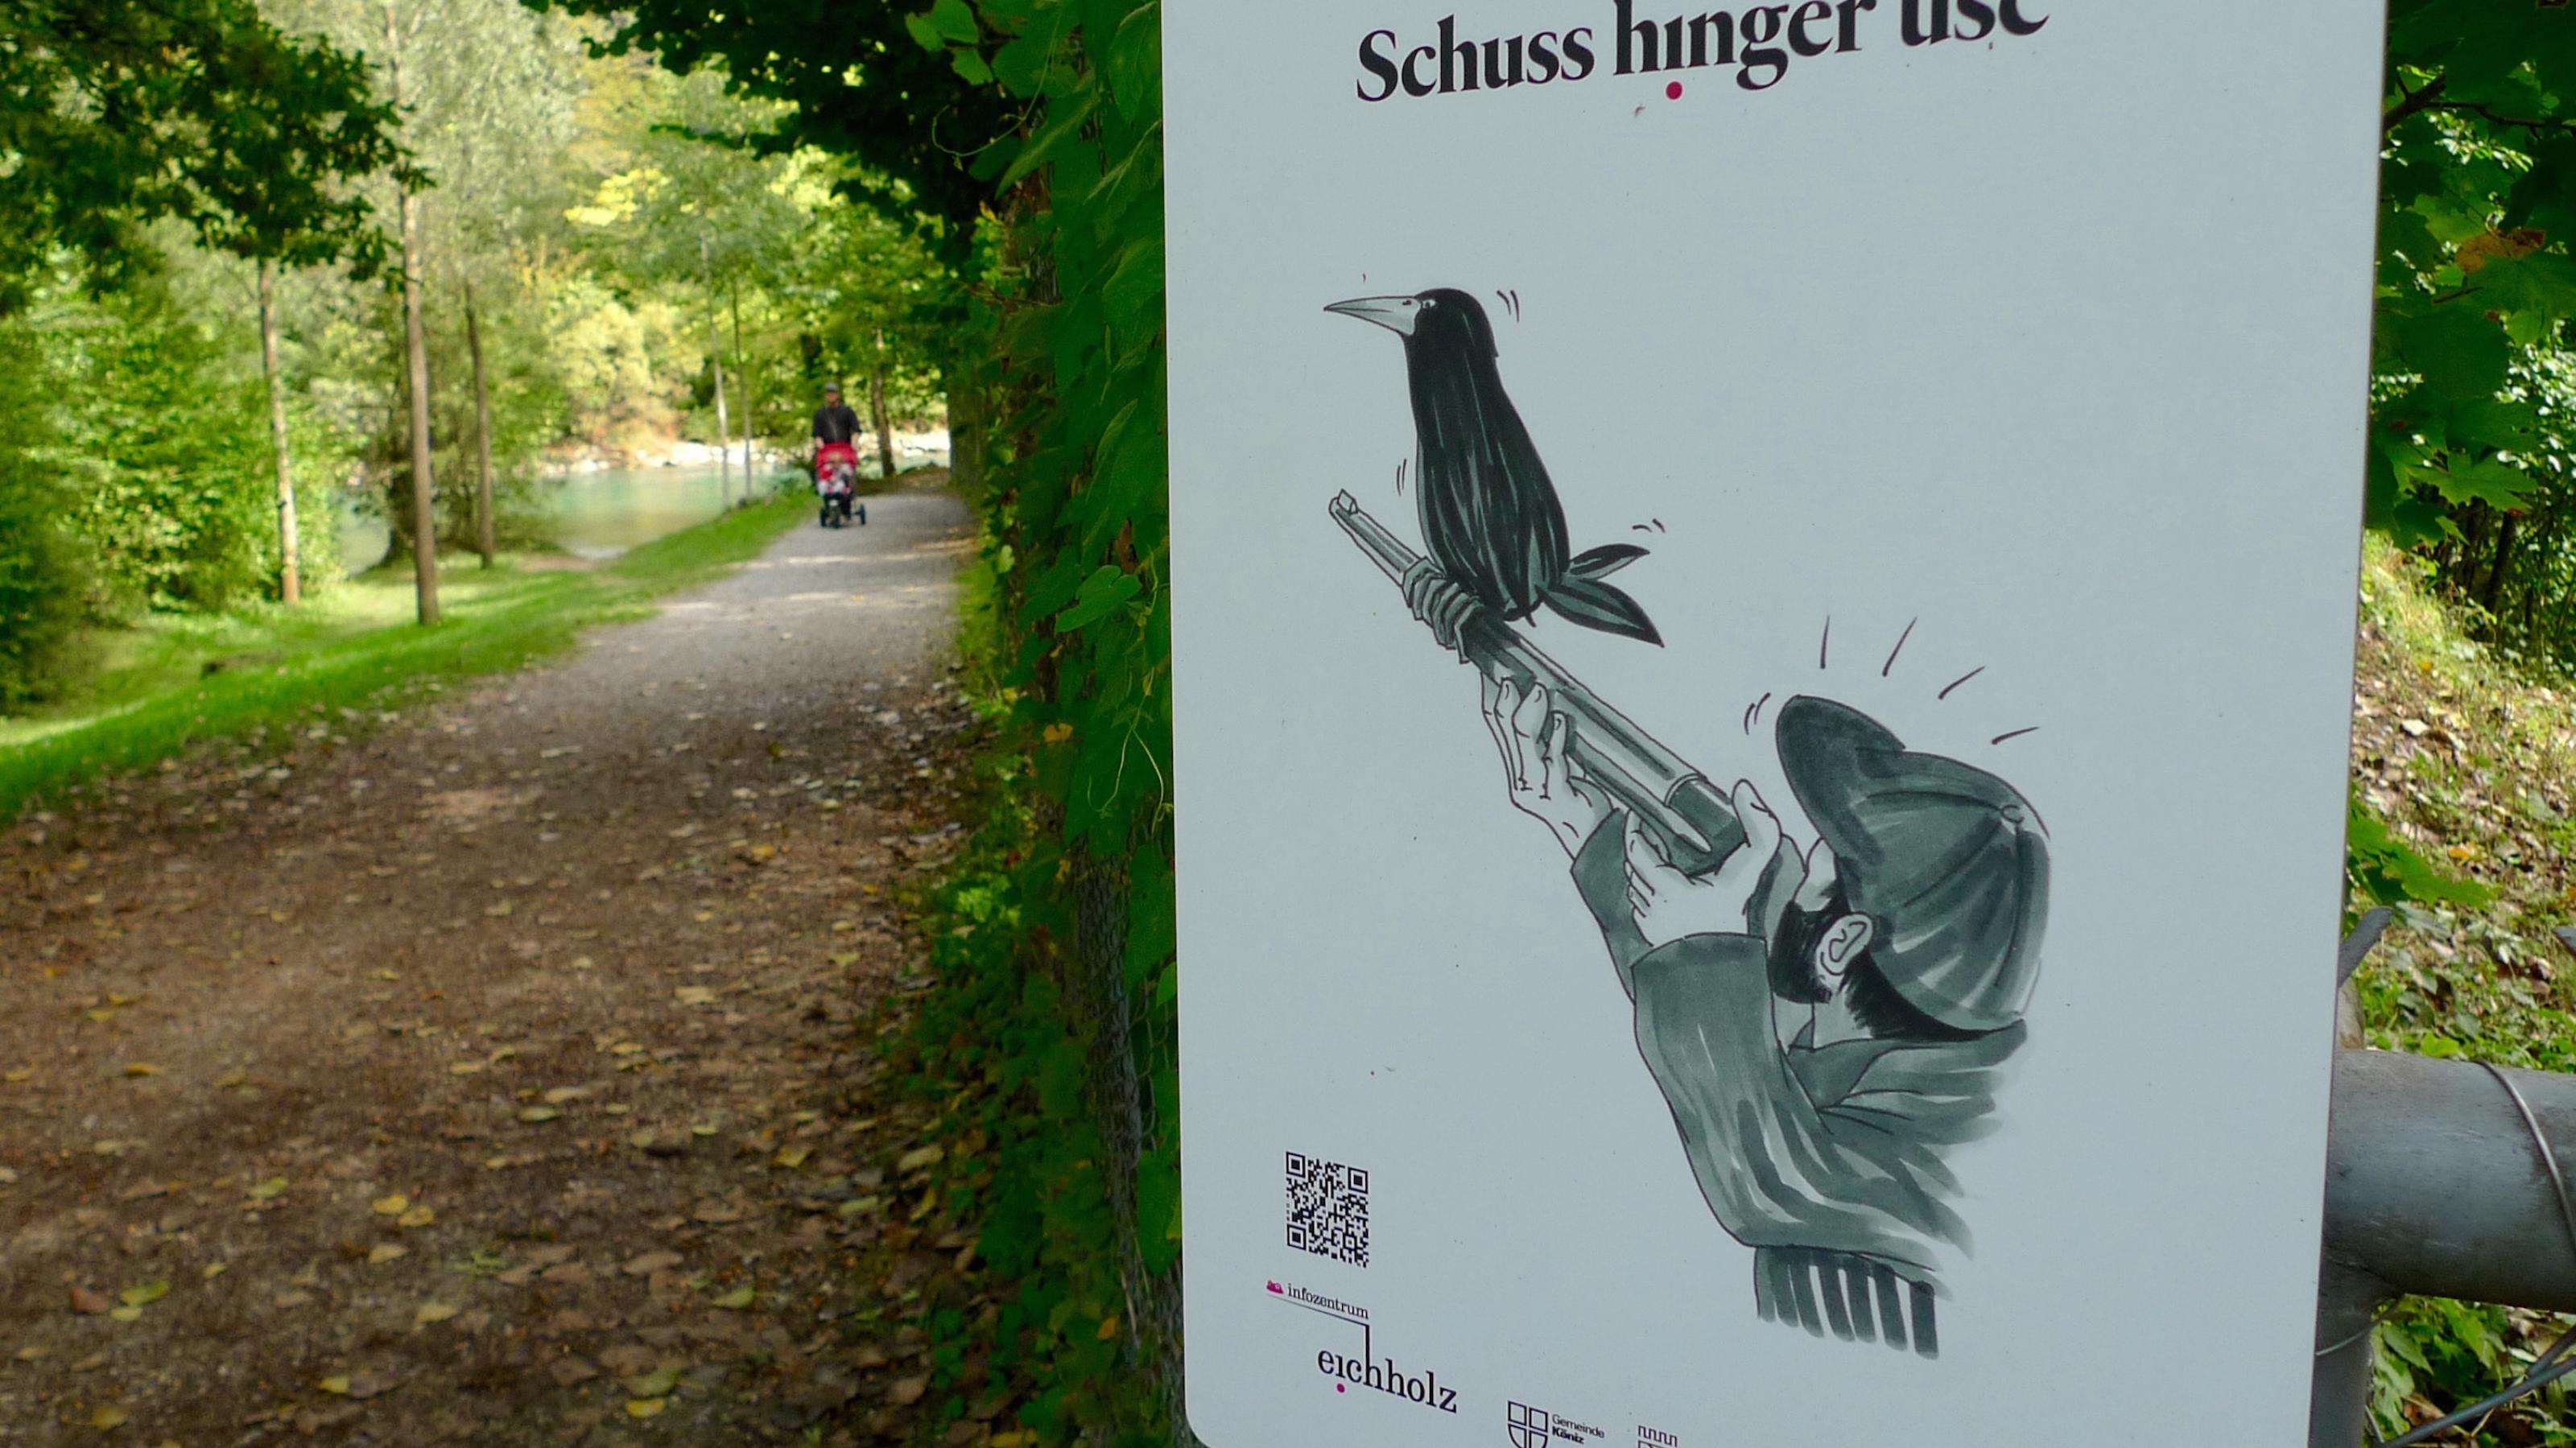 „Der Schuss geht nach hinten los“: Mit humoristischen Plakaten macht in Bern eine Ausstellung auf die Konflikte zwischen Mensch und Saatkrähen aufmerksam. Das Plakat zeigt einen Jäger, auf dessen Waffe eine Saatkrähe sitzt.